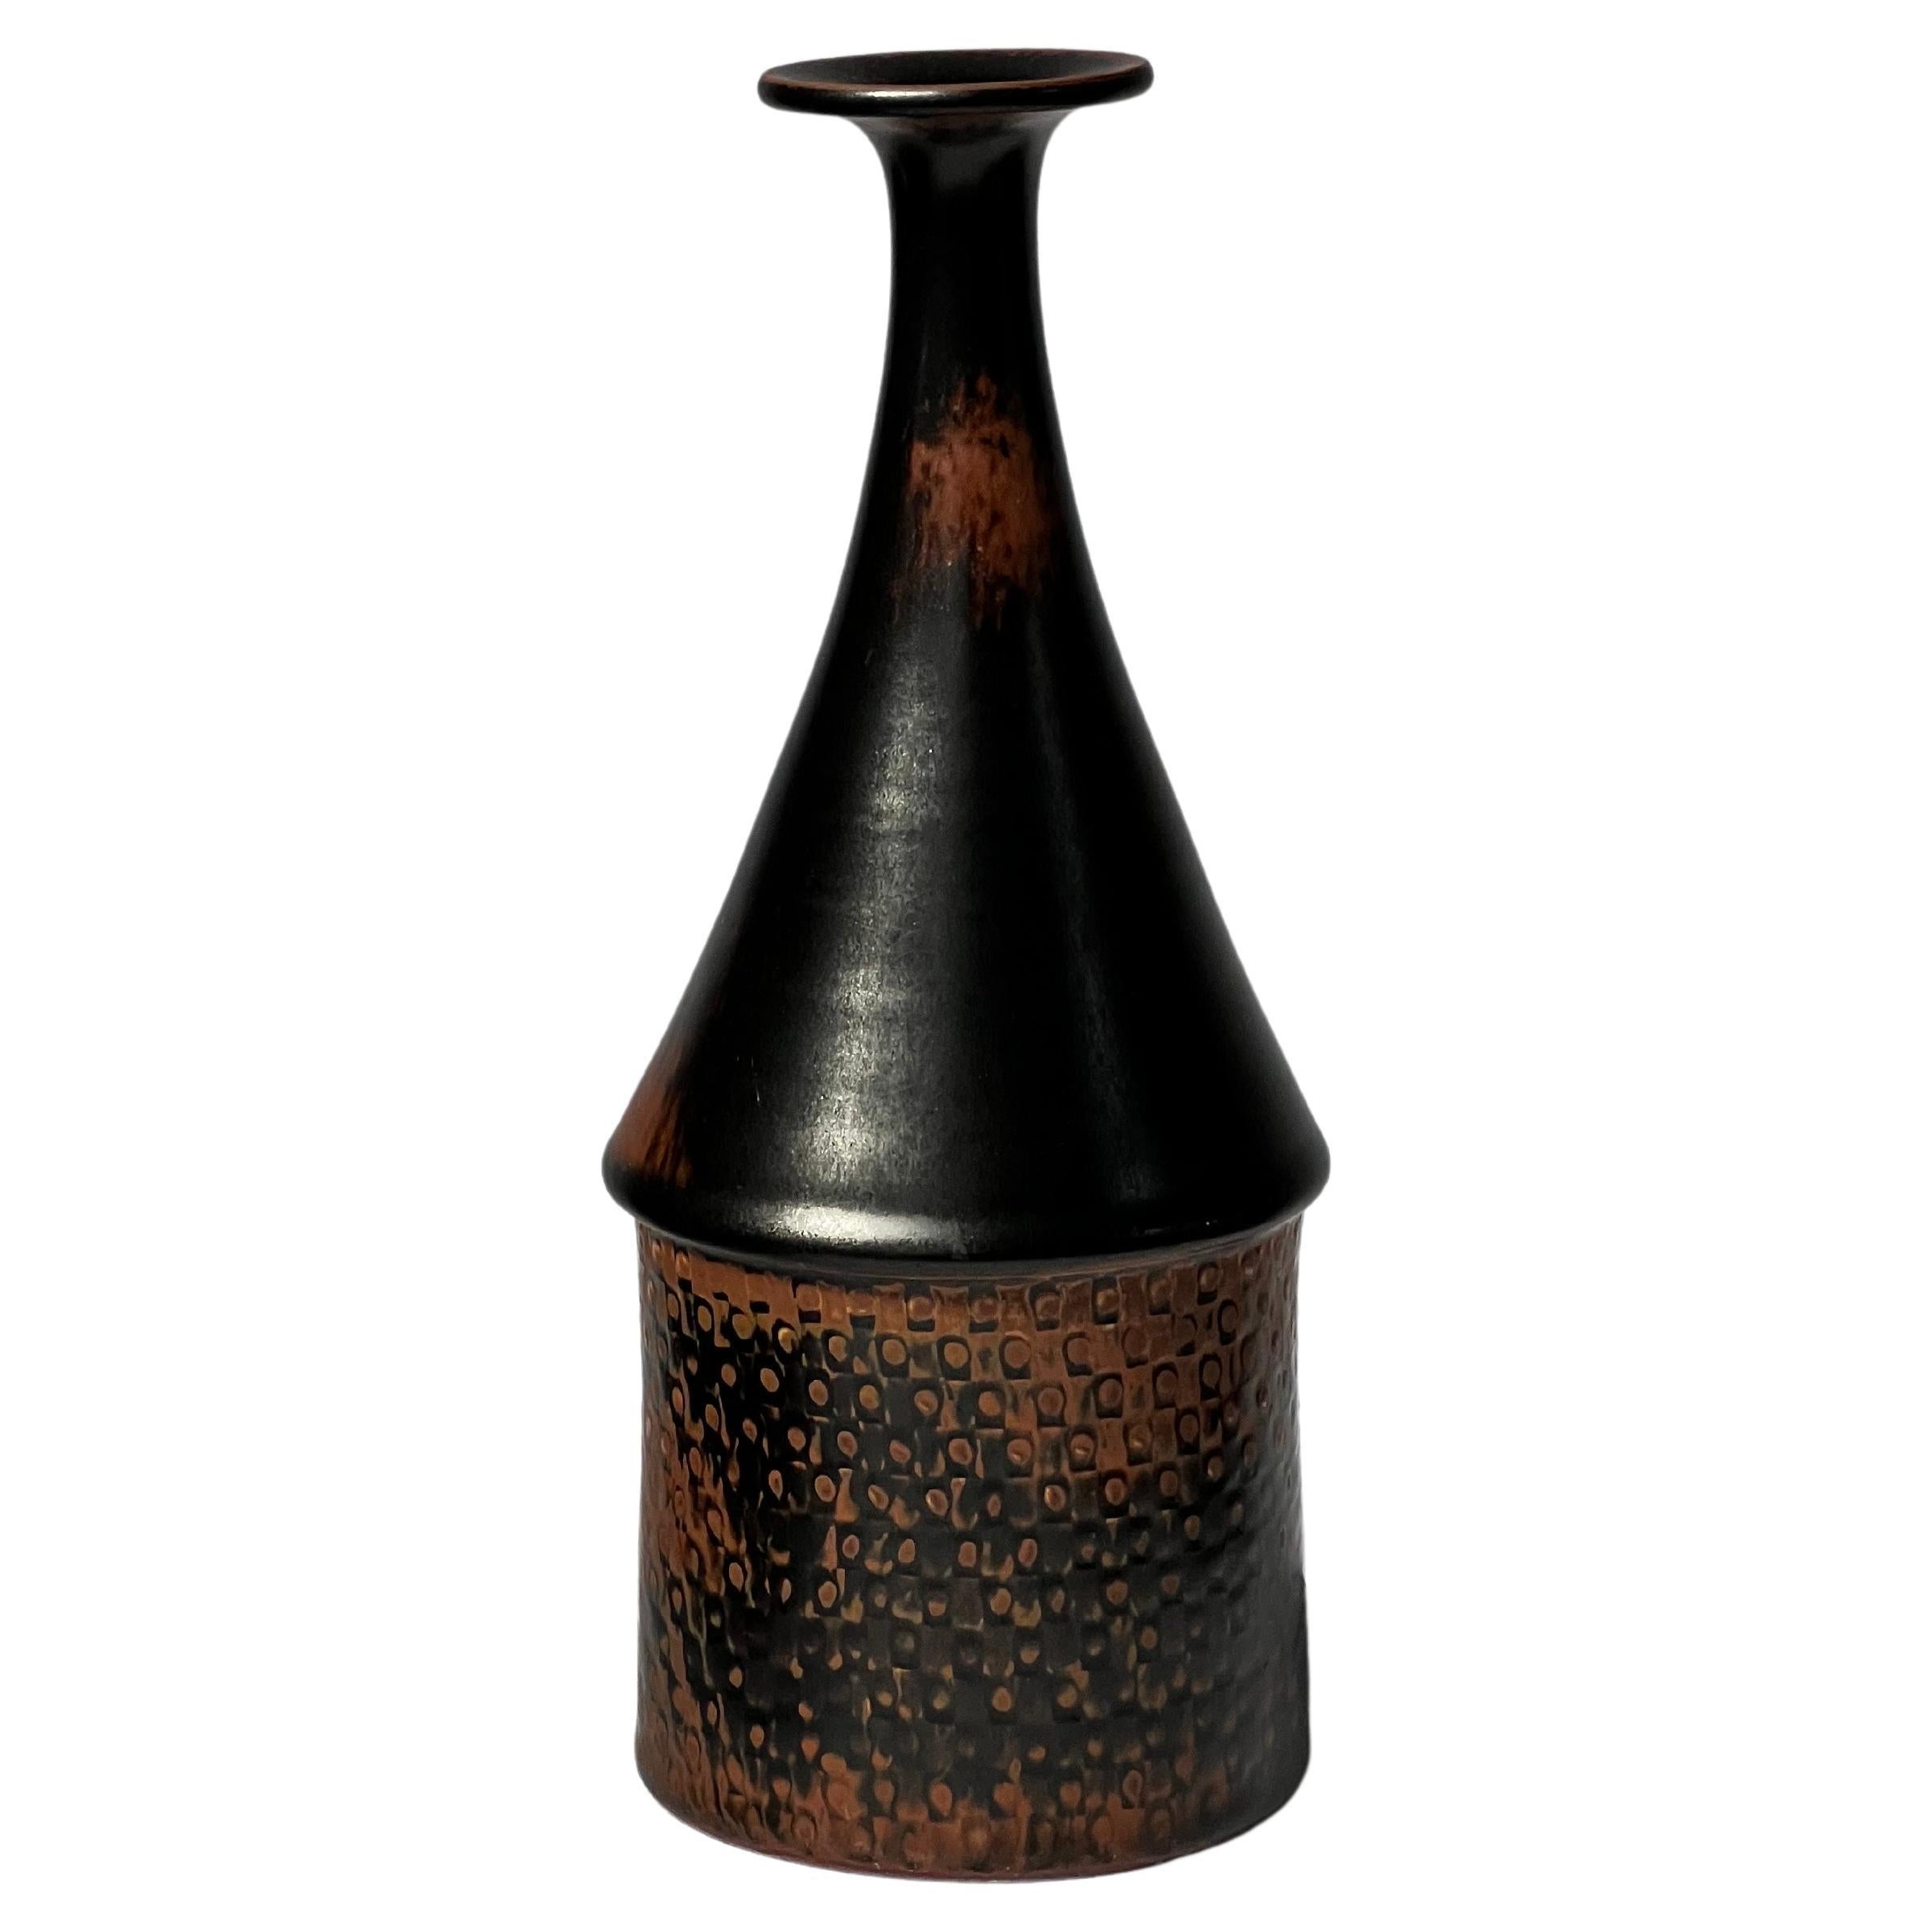 Stig Lindberg Unique Vase in black Glaze Tenmoku Made by Hand Sweden 1969 For Sale